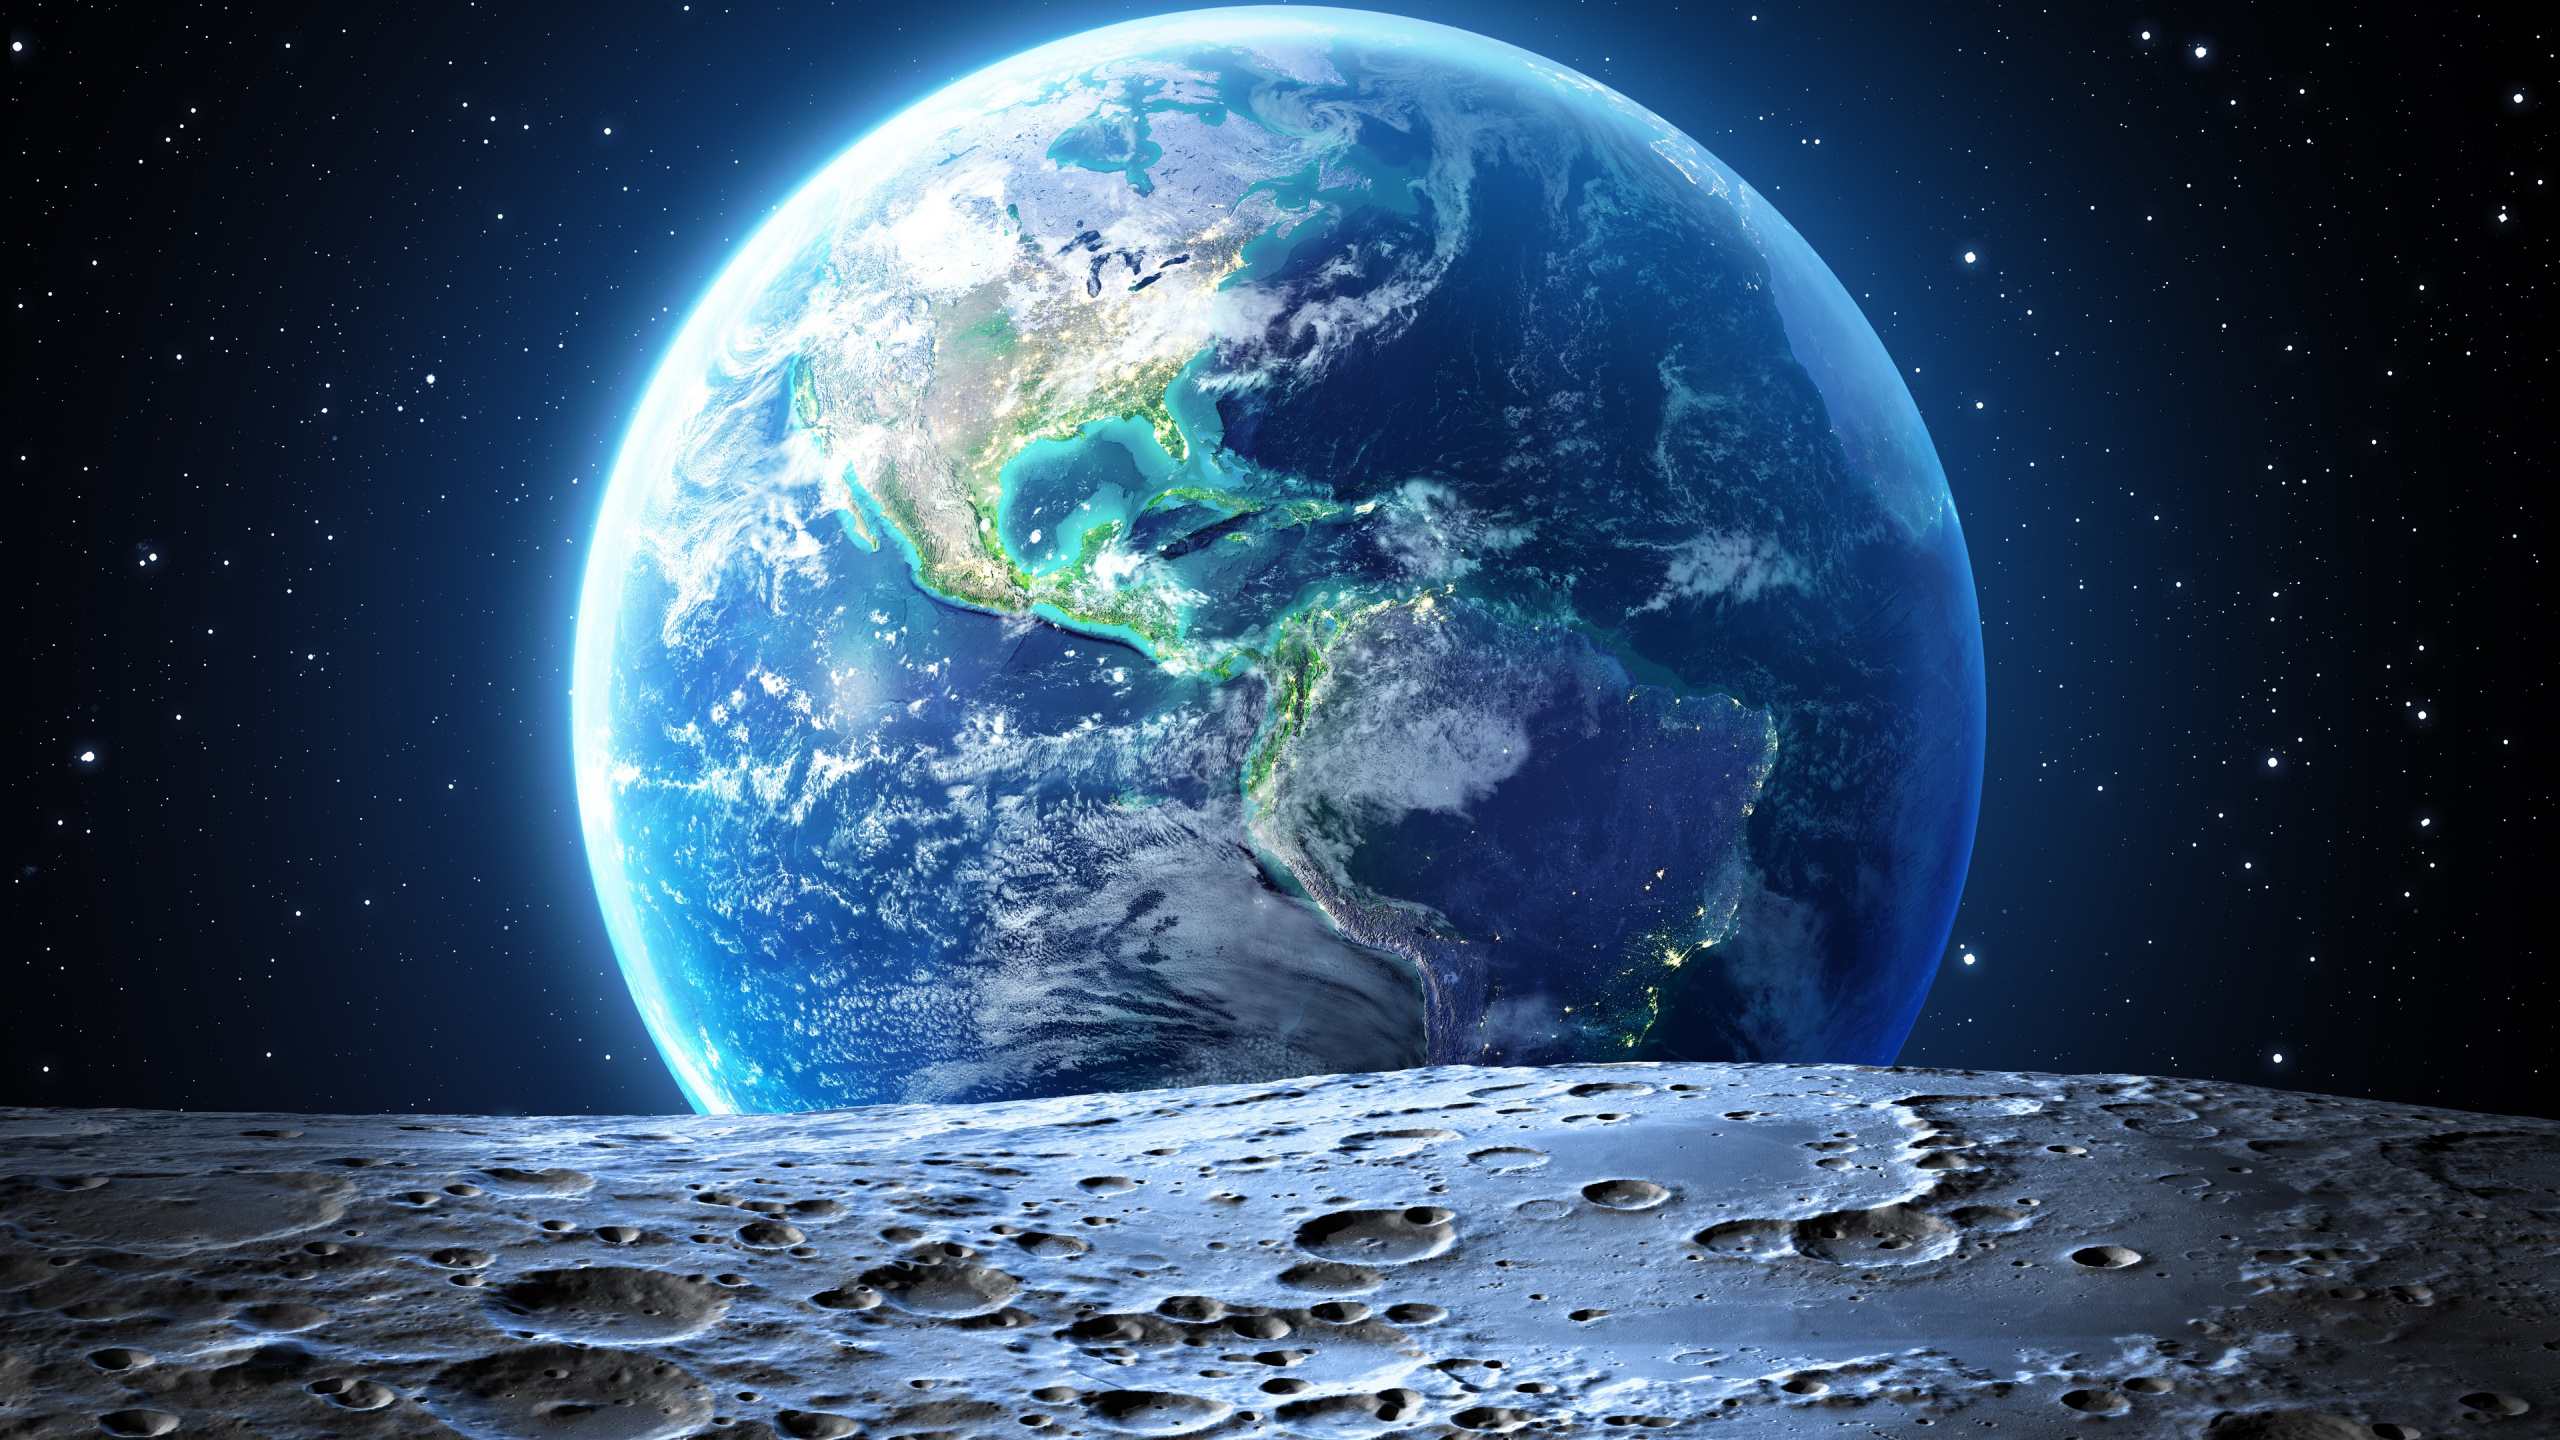 月亮, 美国, 这个星球, 外层空间, 天文学对象 壁纸 2560x1440 允许